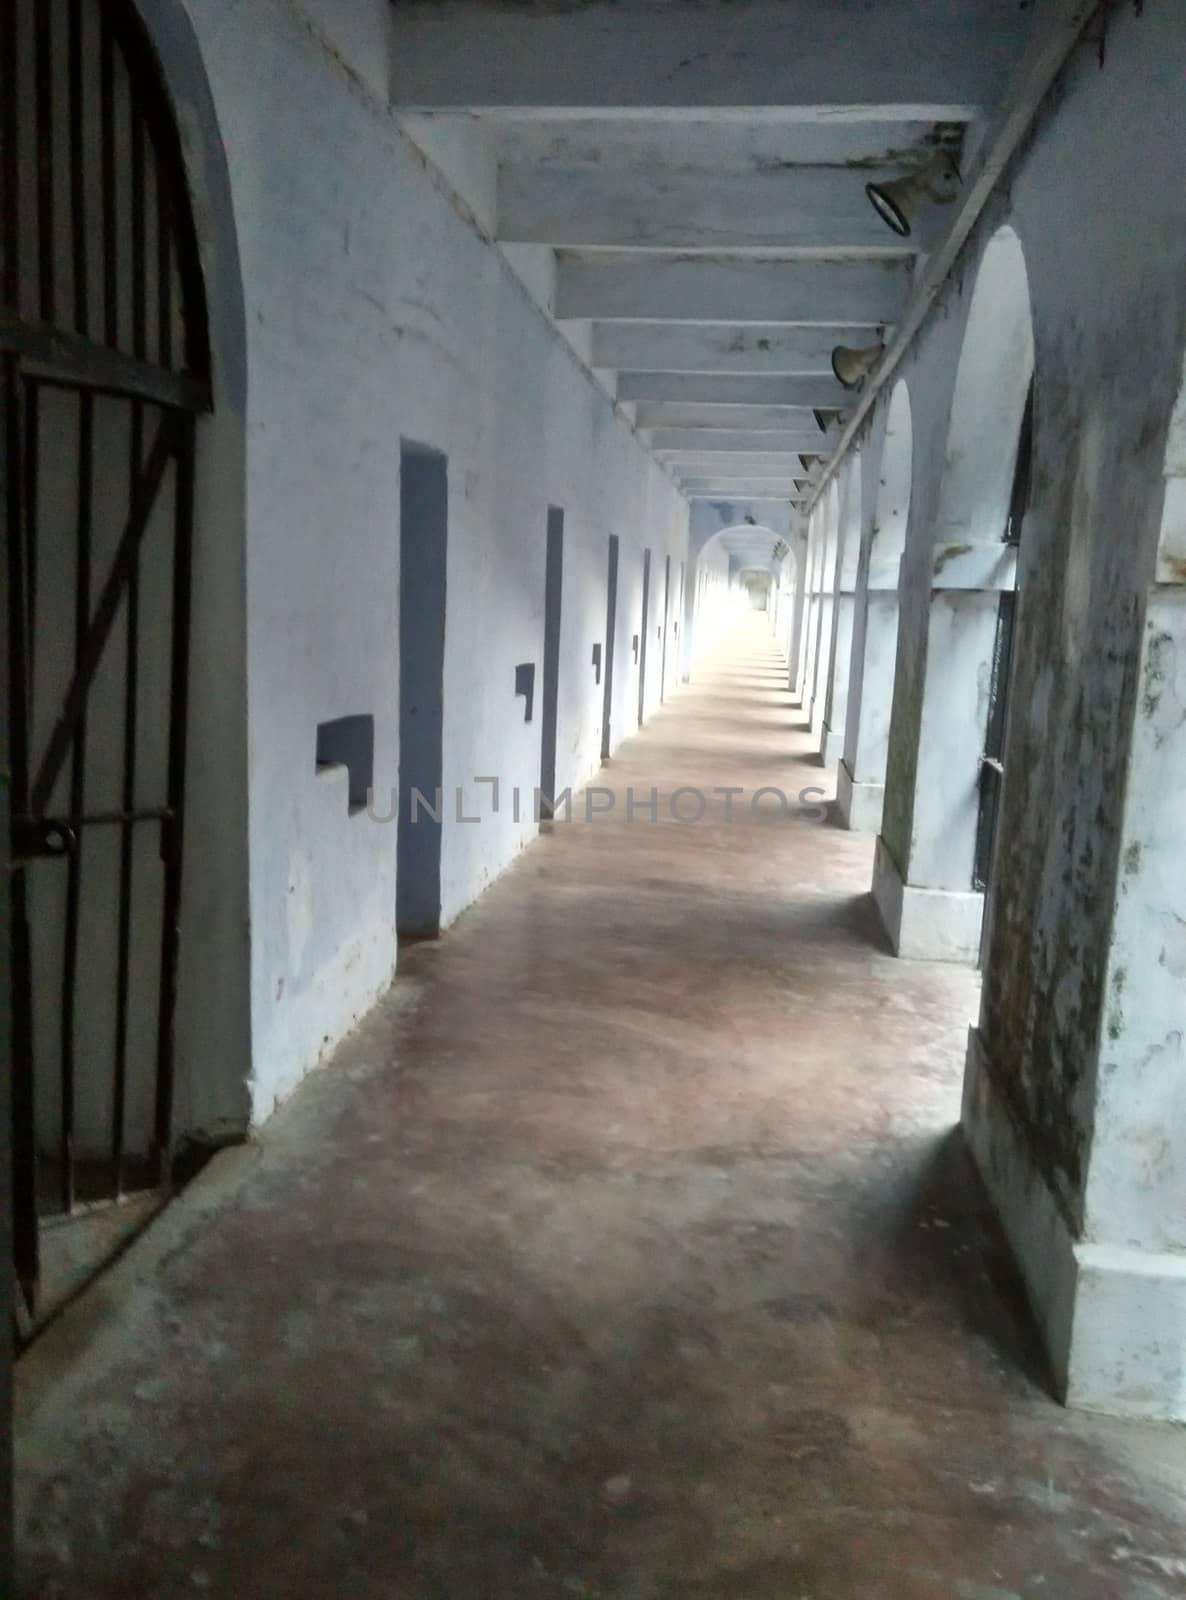 corridors of cellular prison in india